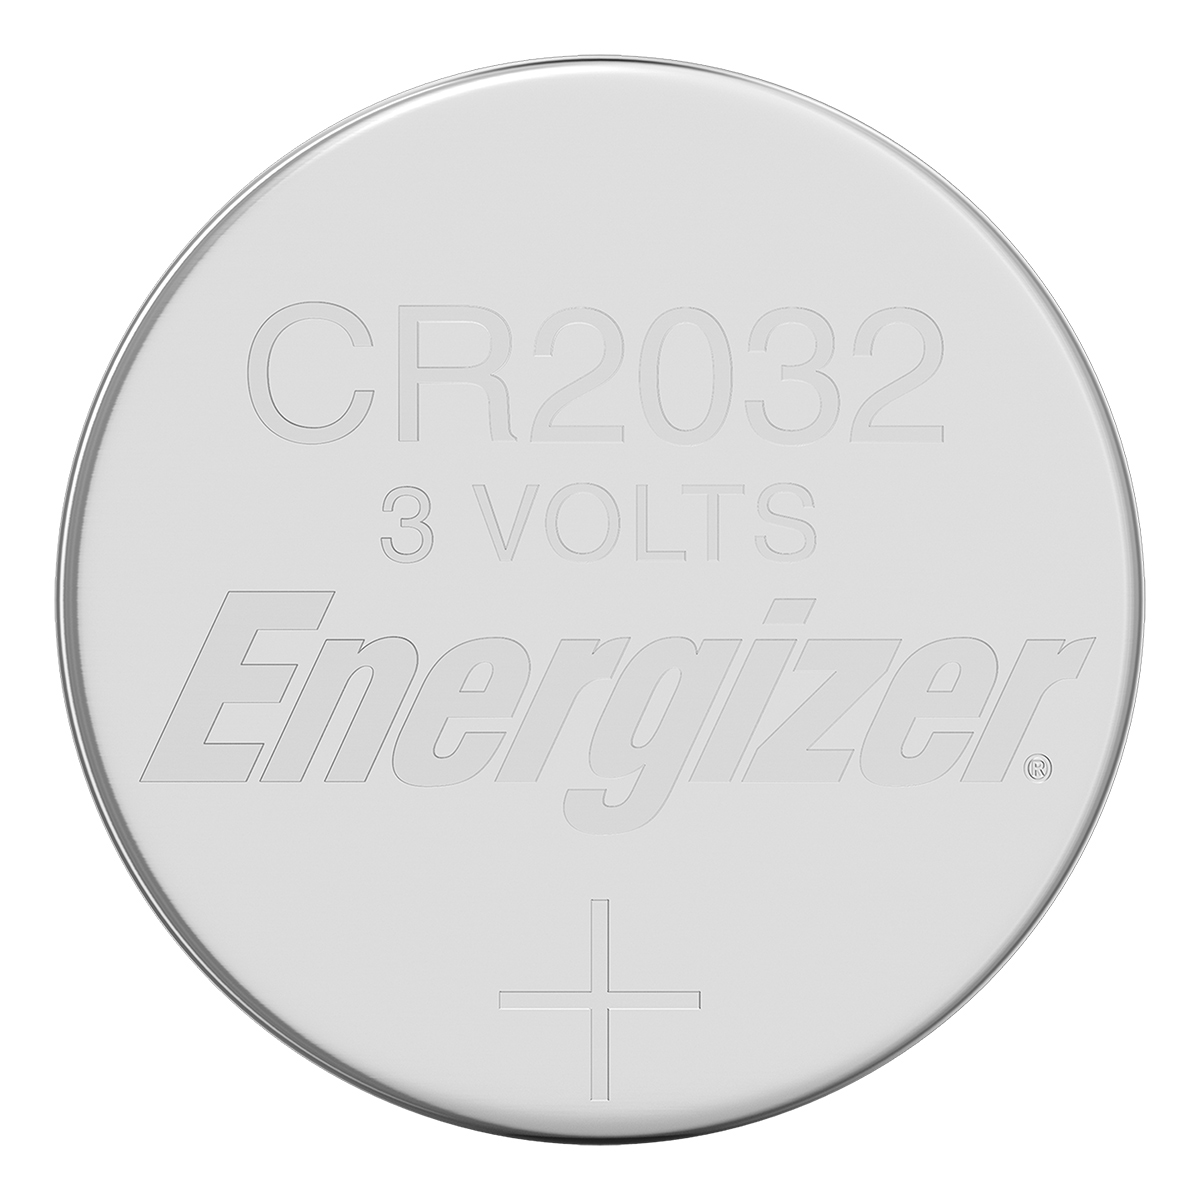 Batterie al litio ENERGIZER CR 2032